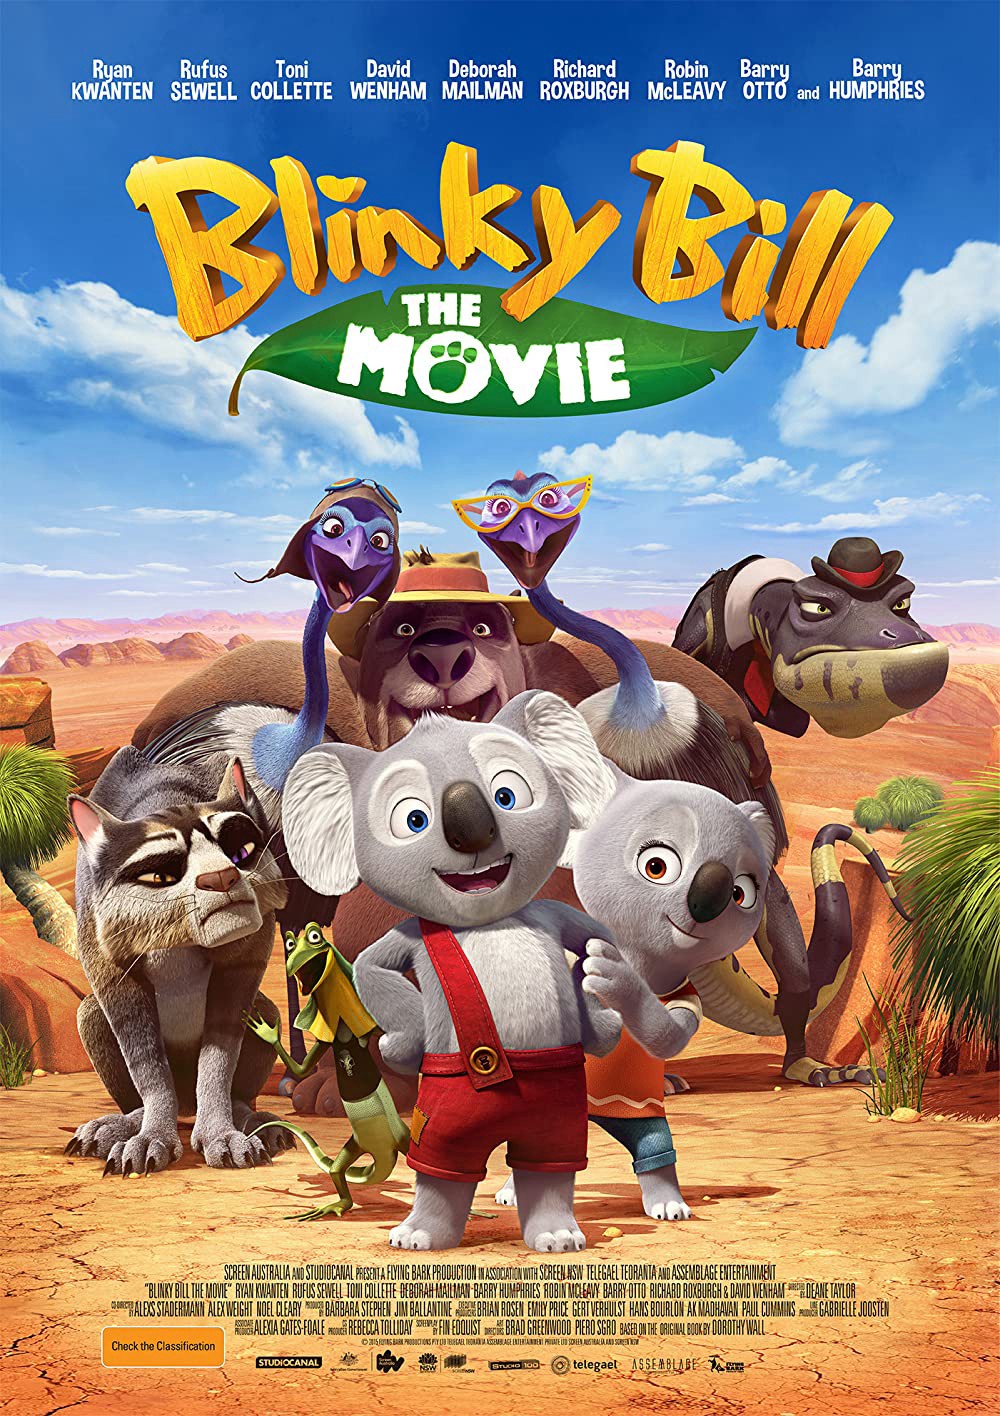 Cuộc Phiêu Lưu Của Blinky Bill - Cuộc Phiêu Lưu Của Blinky Bill